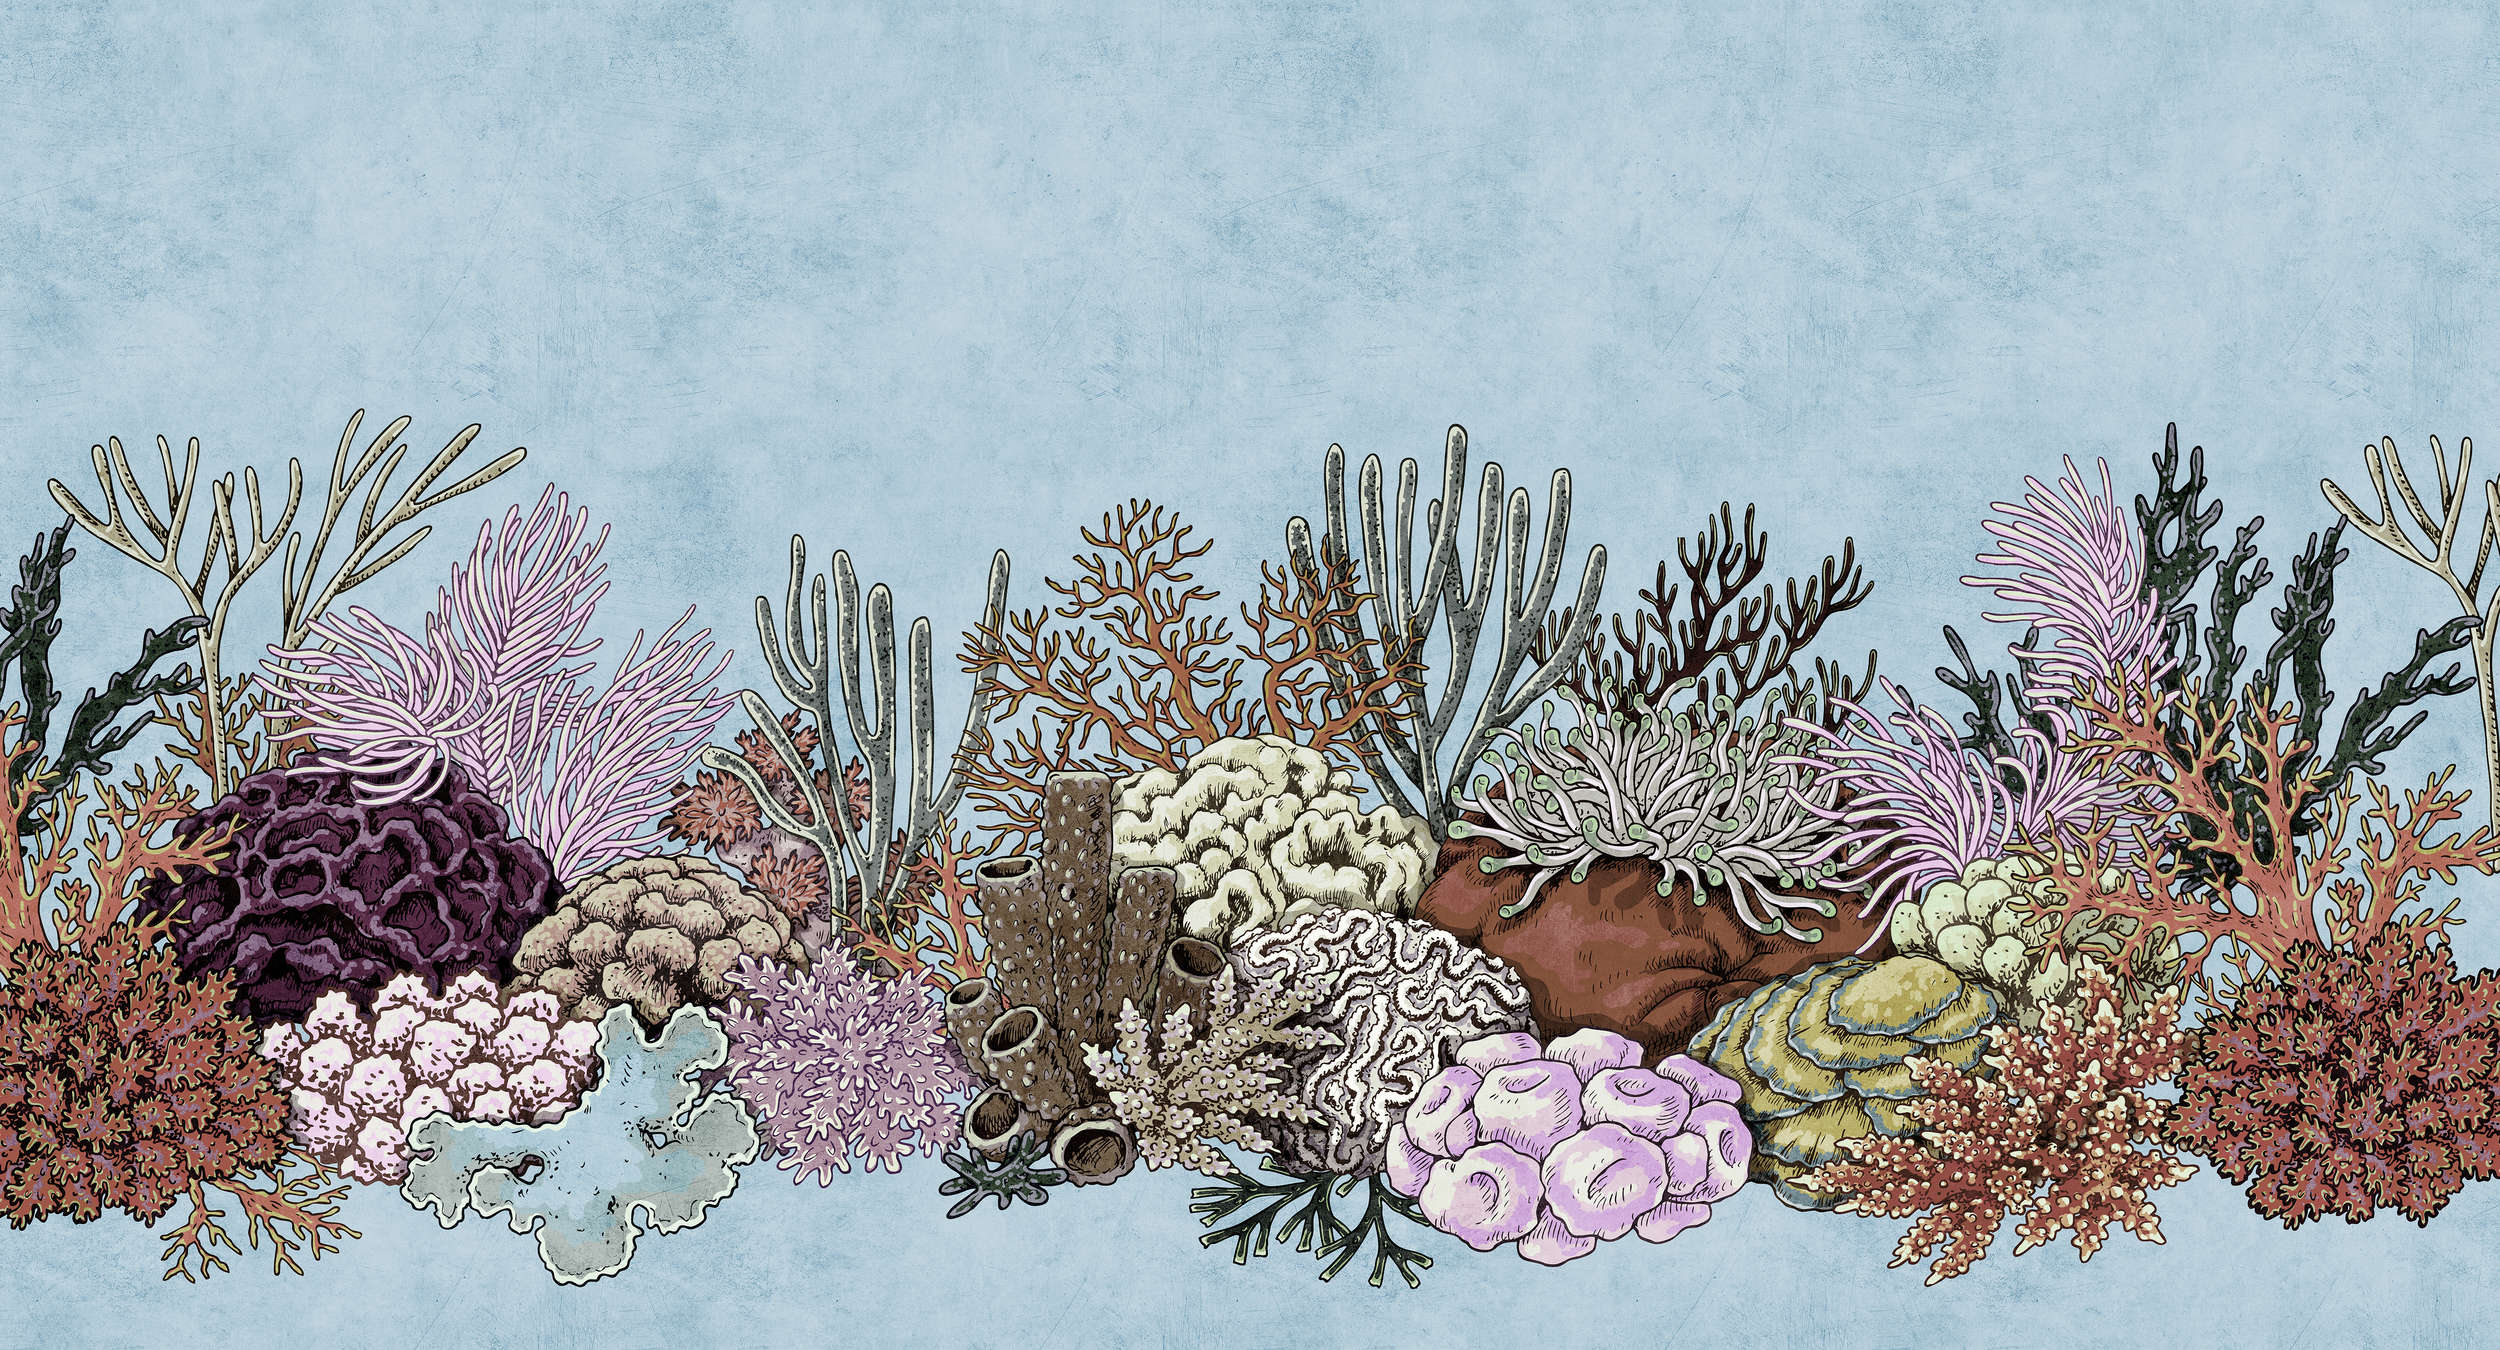             Octopus's Garden 1 - Onderwaterbehang met koralen in vloeipapierstructuur - Blauw, Roze | Premium Smooth Vliesbehang
        